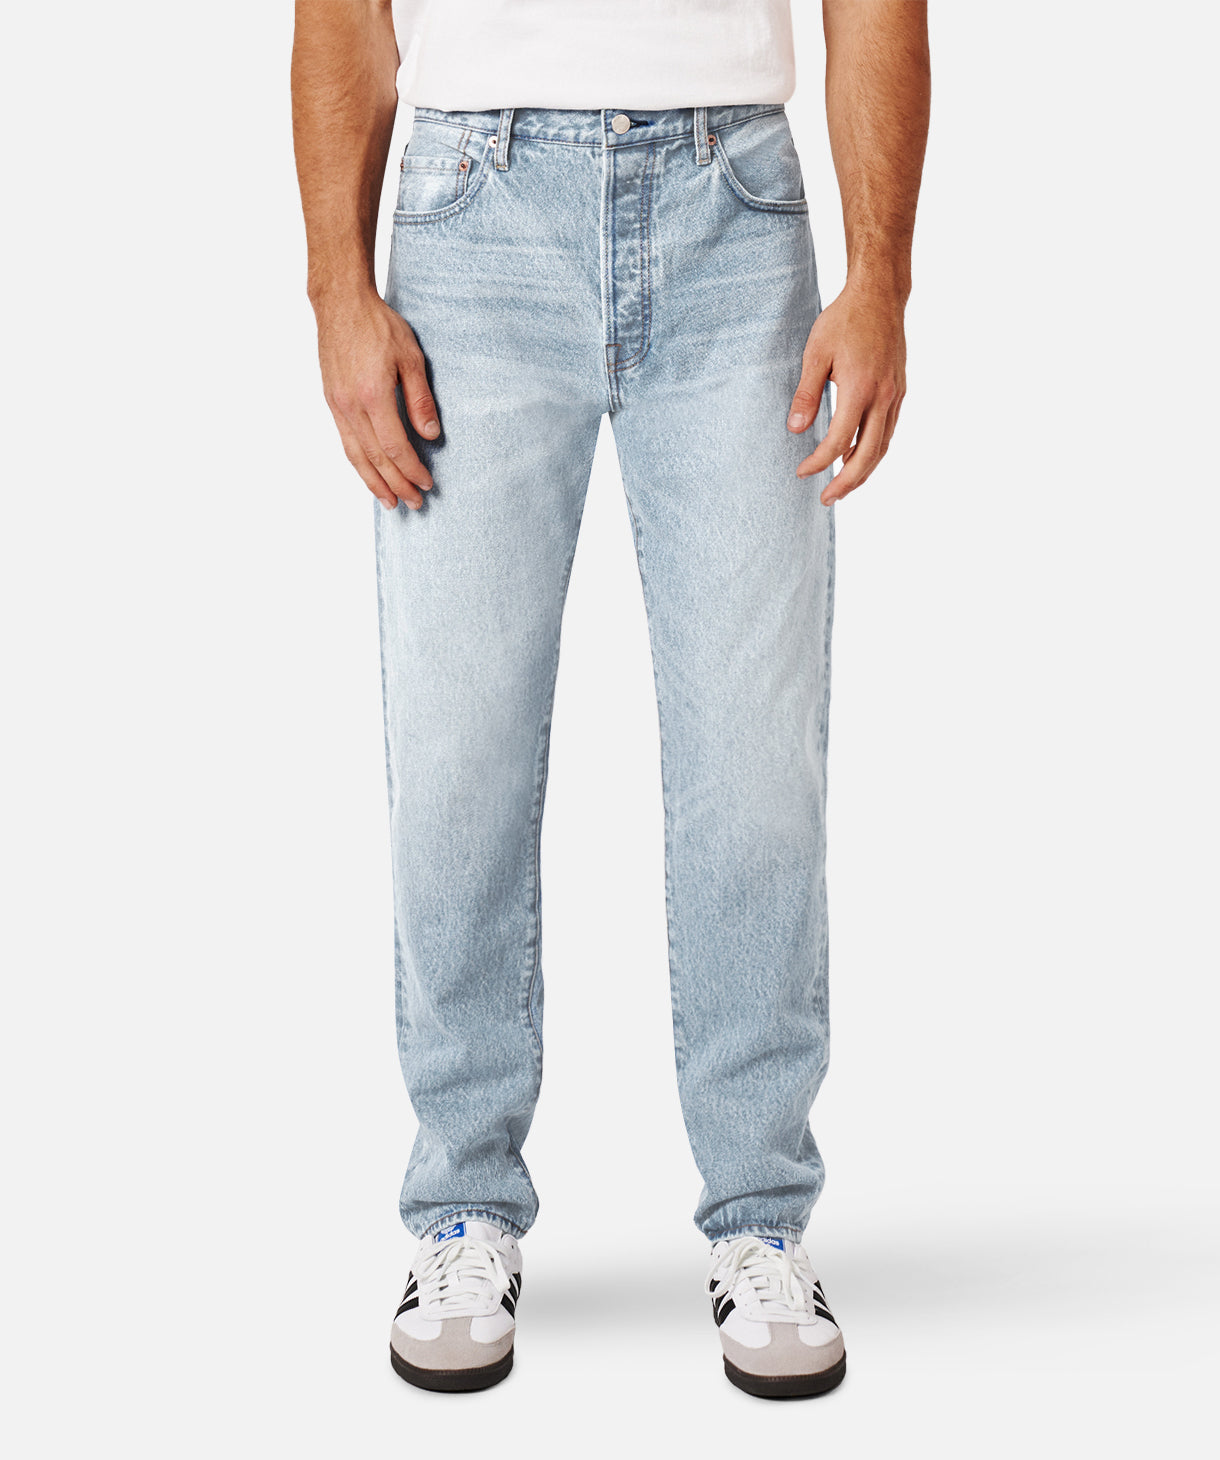 Men's Jeans, Shop Men's Denim Jeans